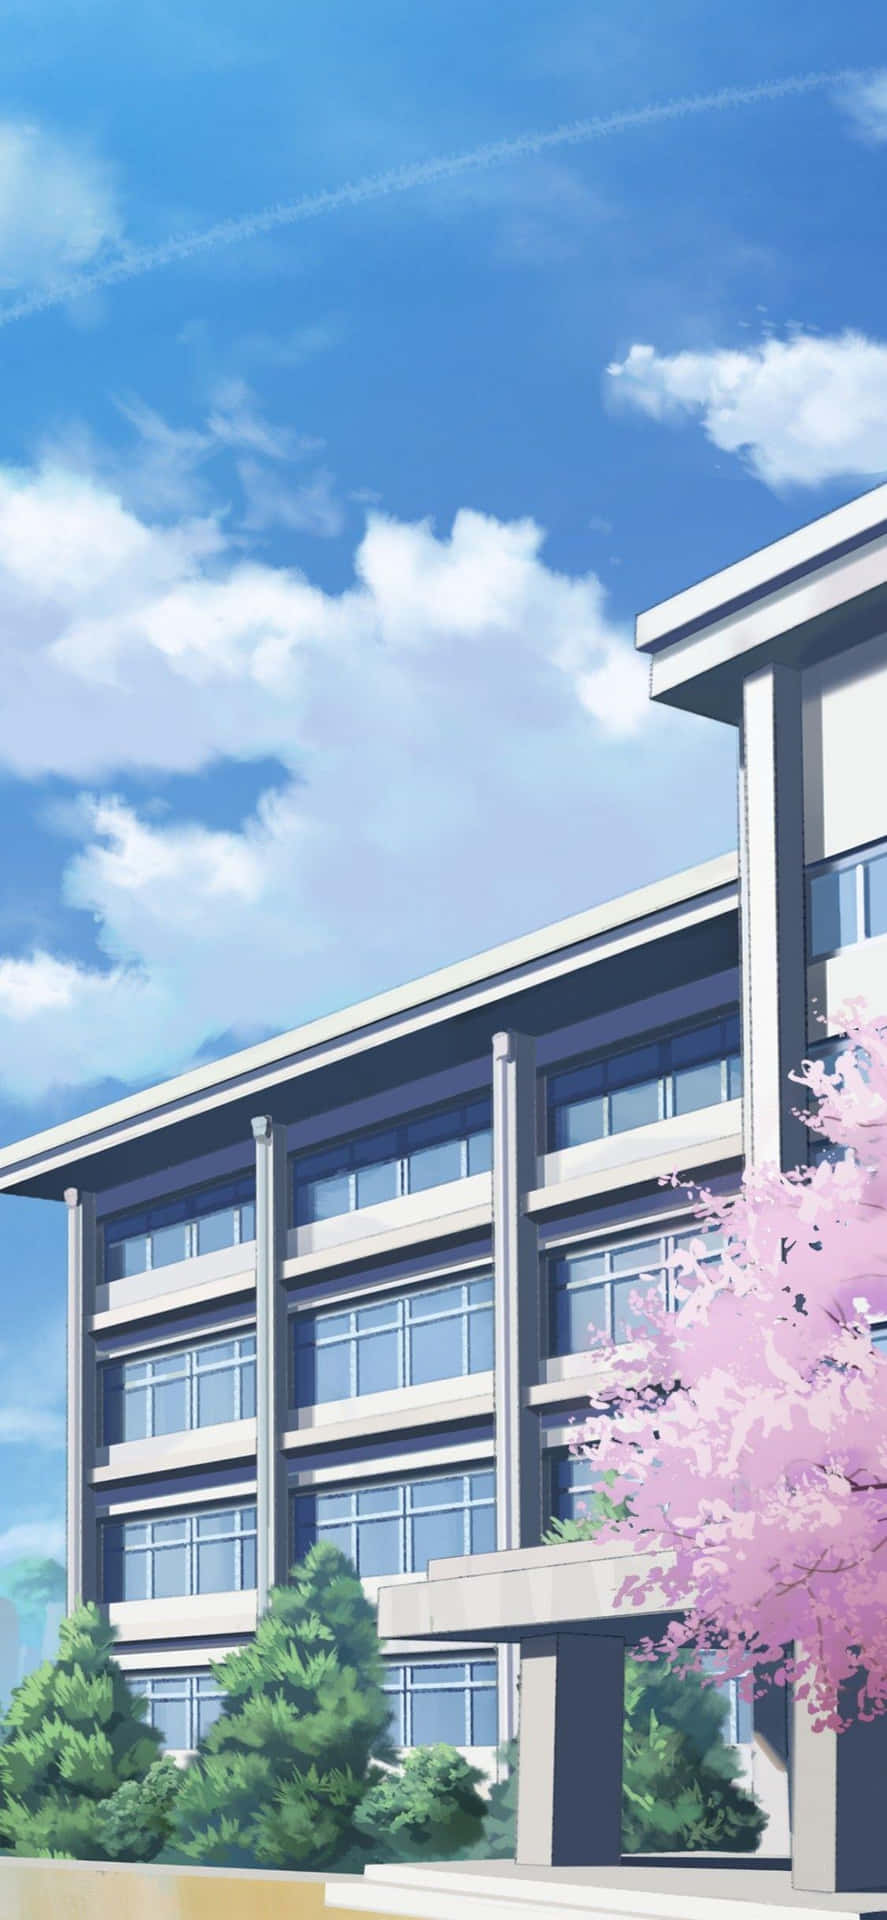 Animeschulgebäude Sakura Wallpaper